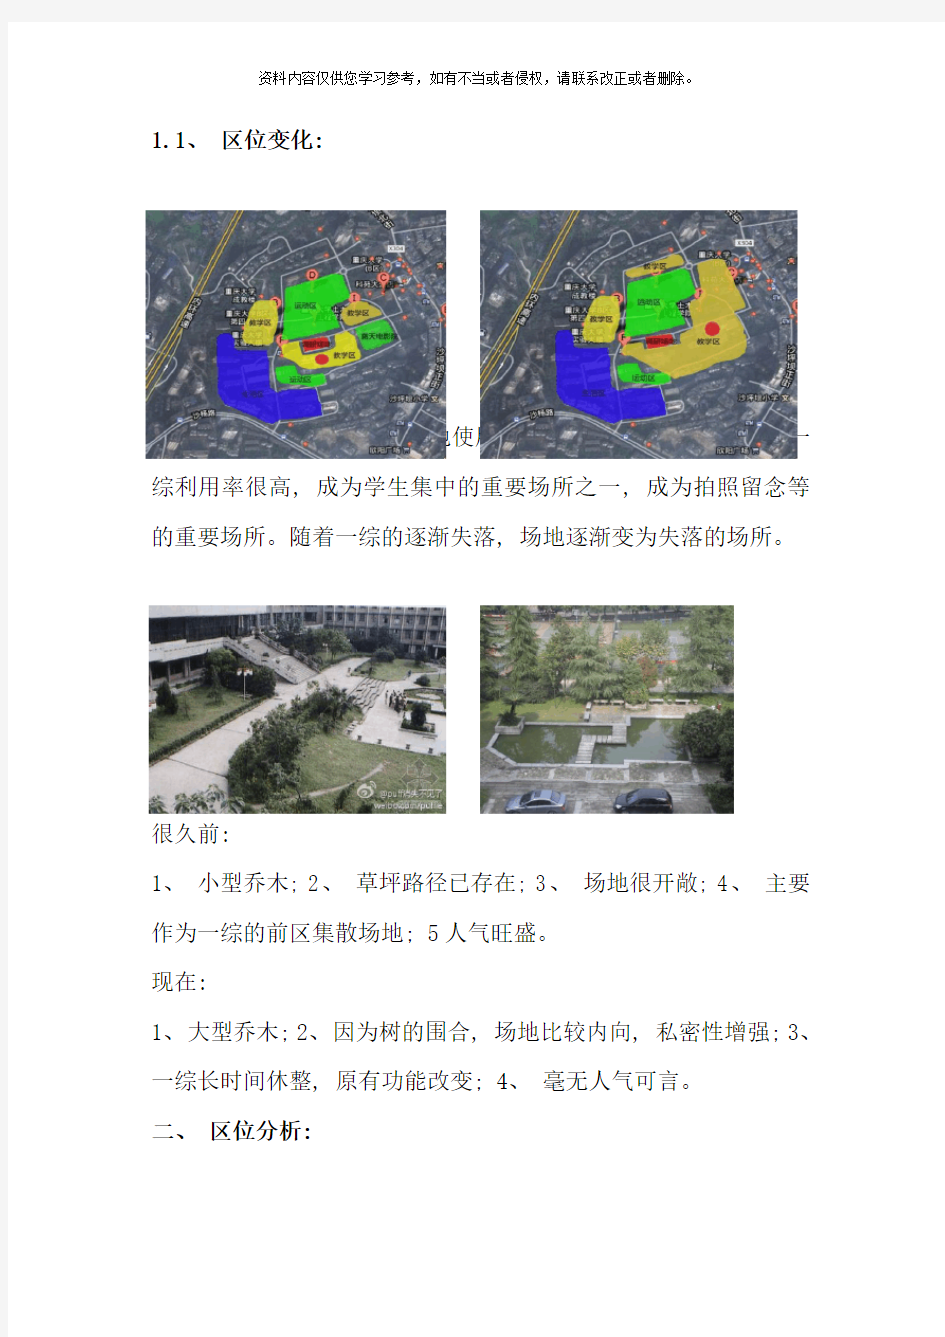 重庆大学校内场地设计调研报告样本